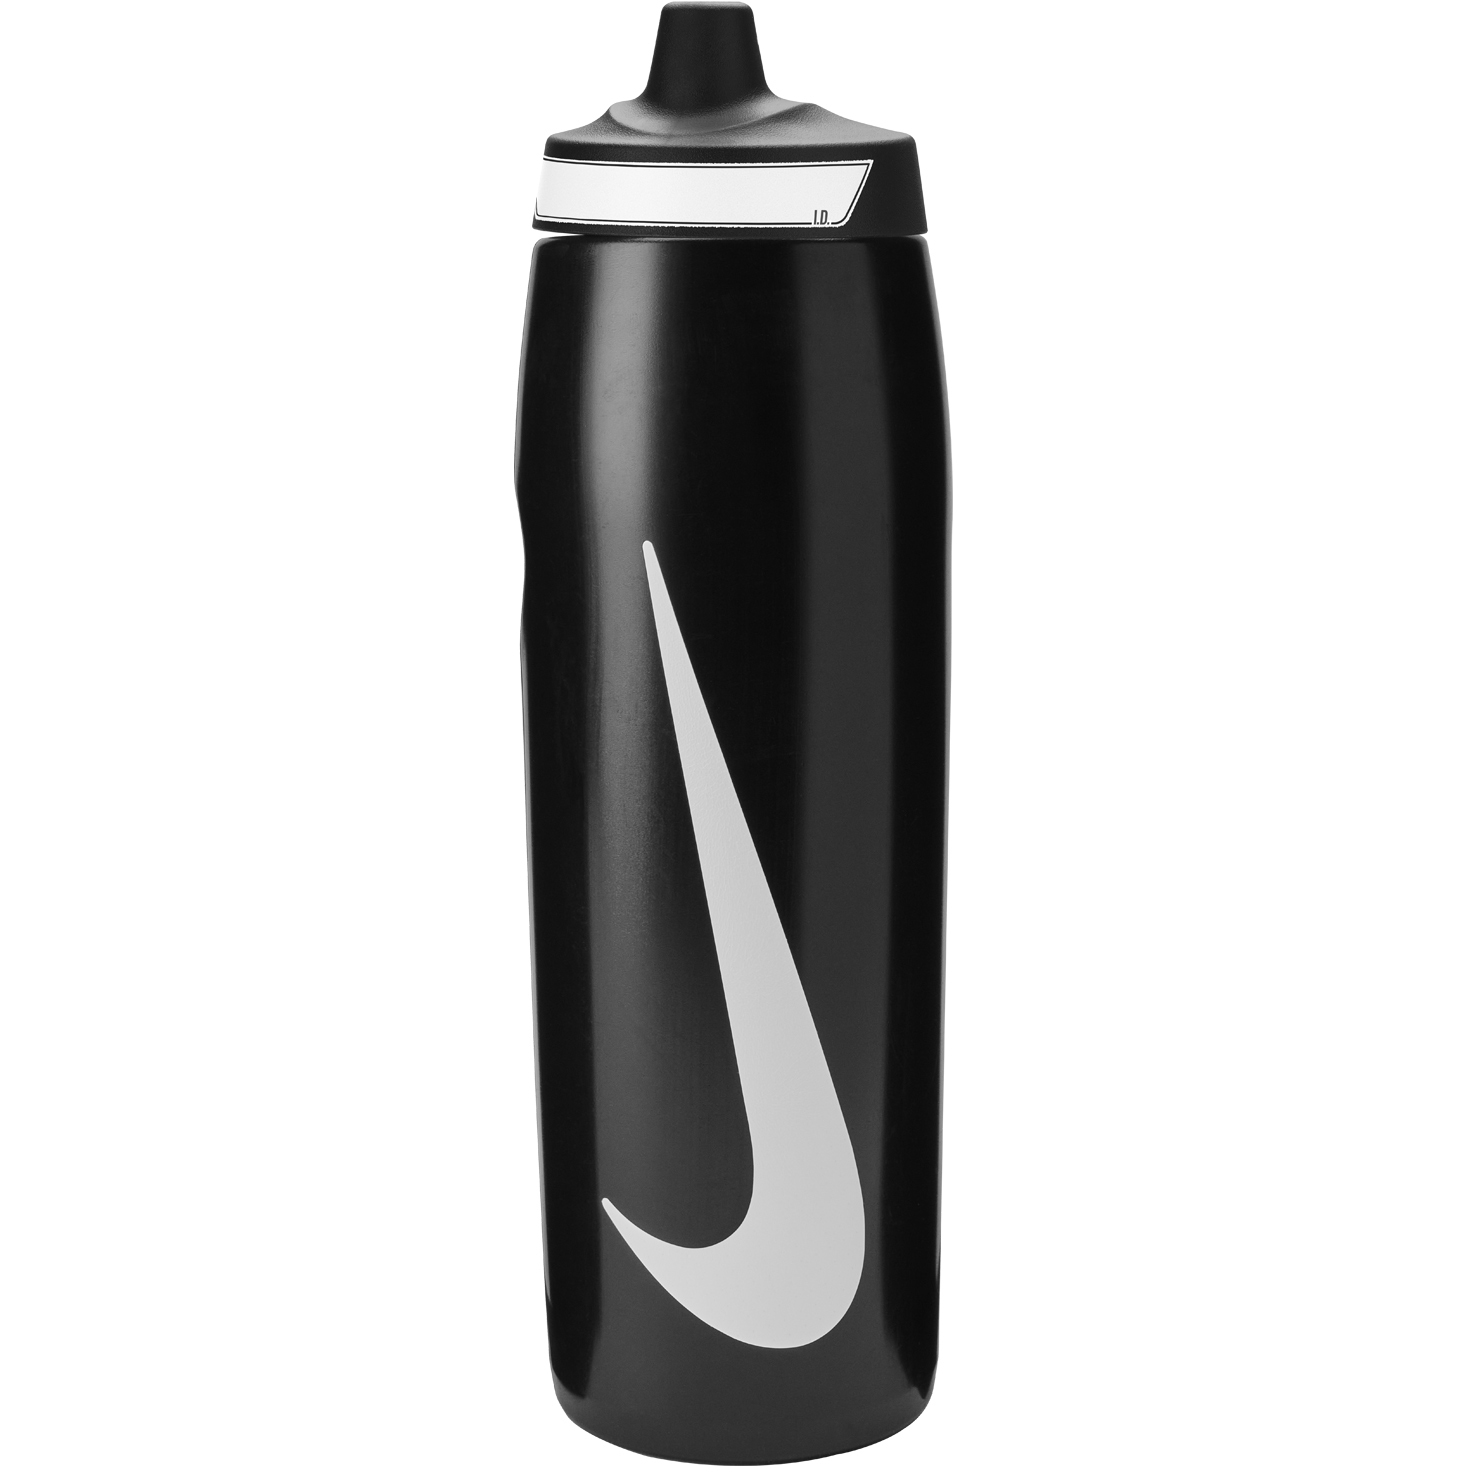 Produktbild von Nike Refuel Trinkflasche 32 oz / 946ml - schwarz/schwarz/weiß 091